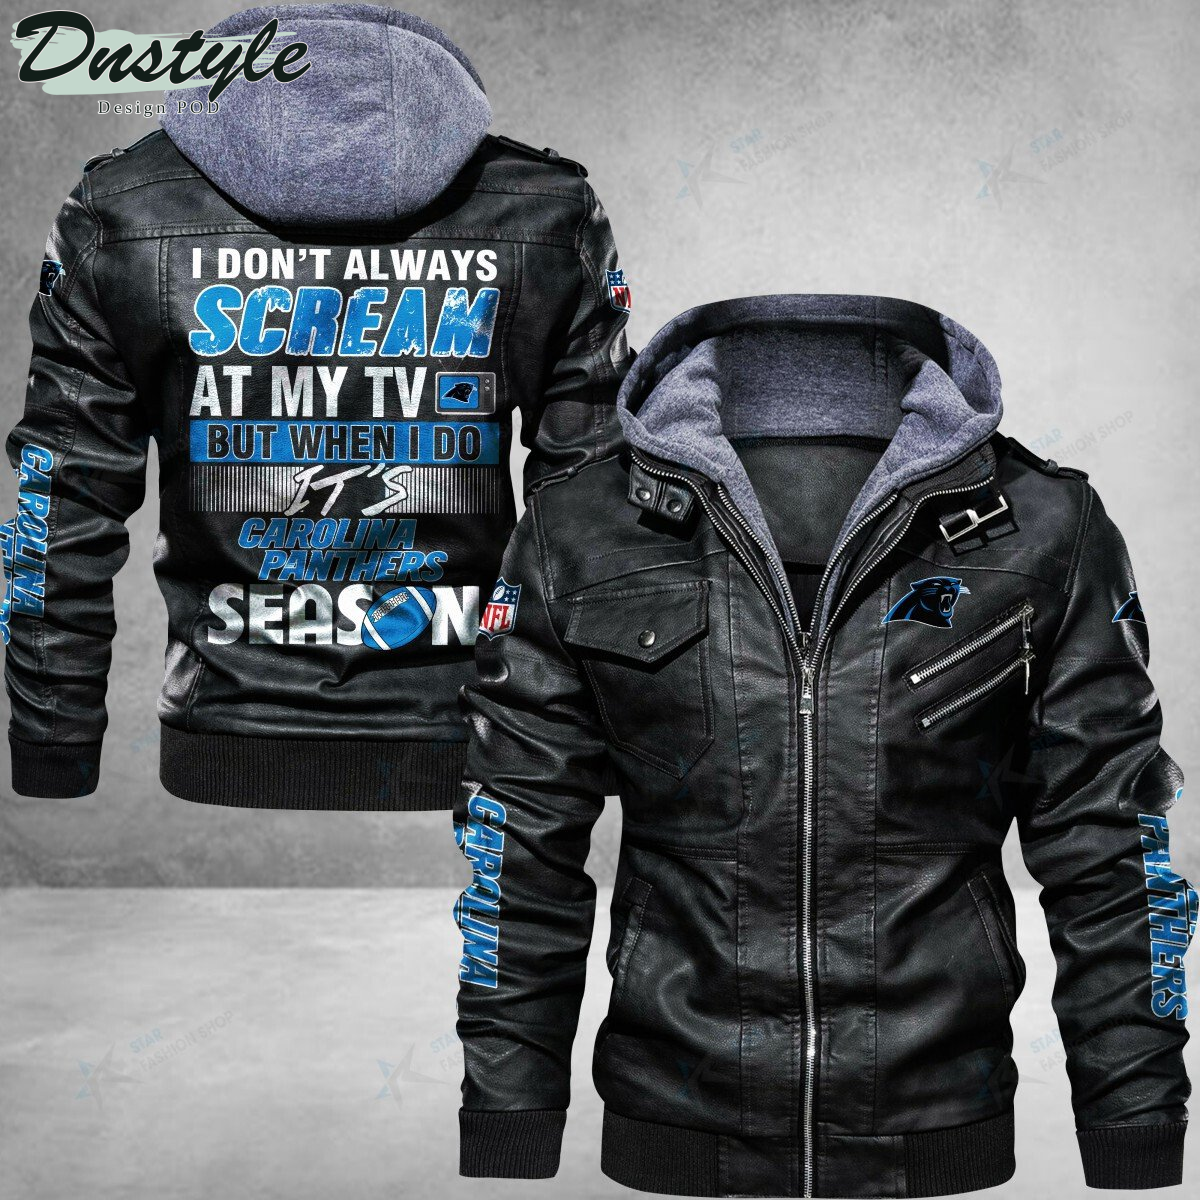 Carolina Panthers I don’t Always Scream At My TV Leather Jacket